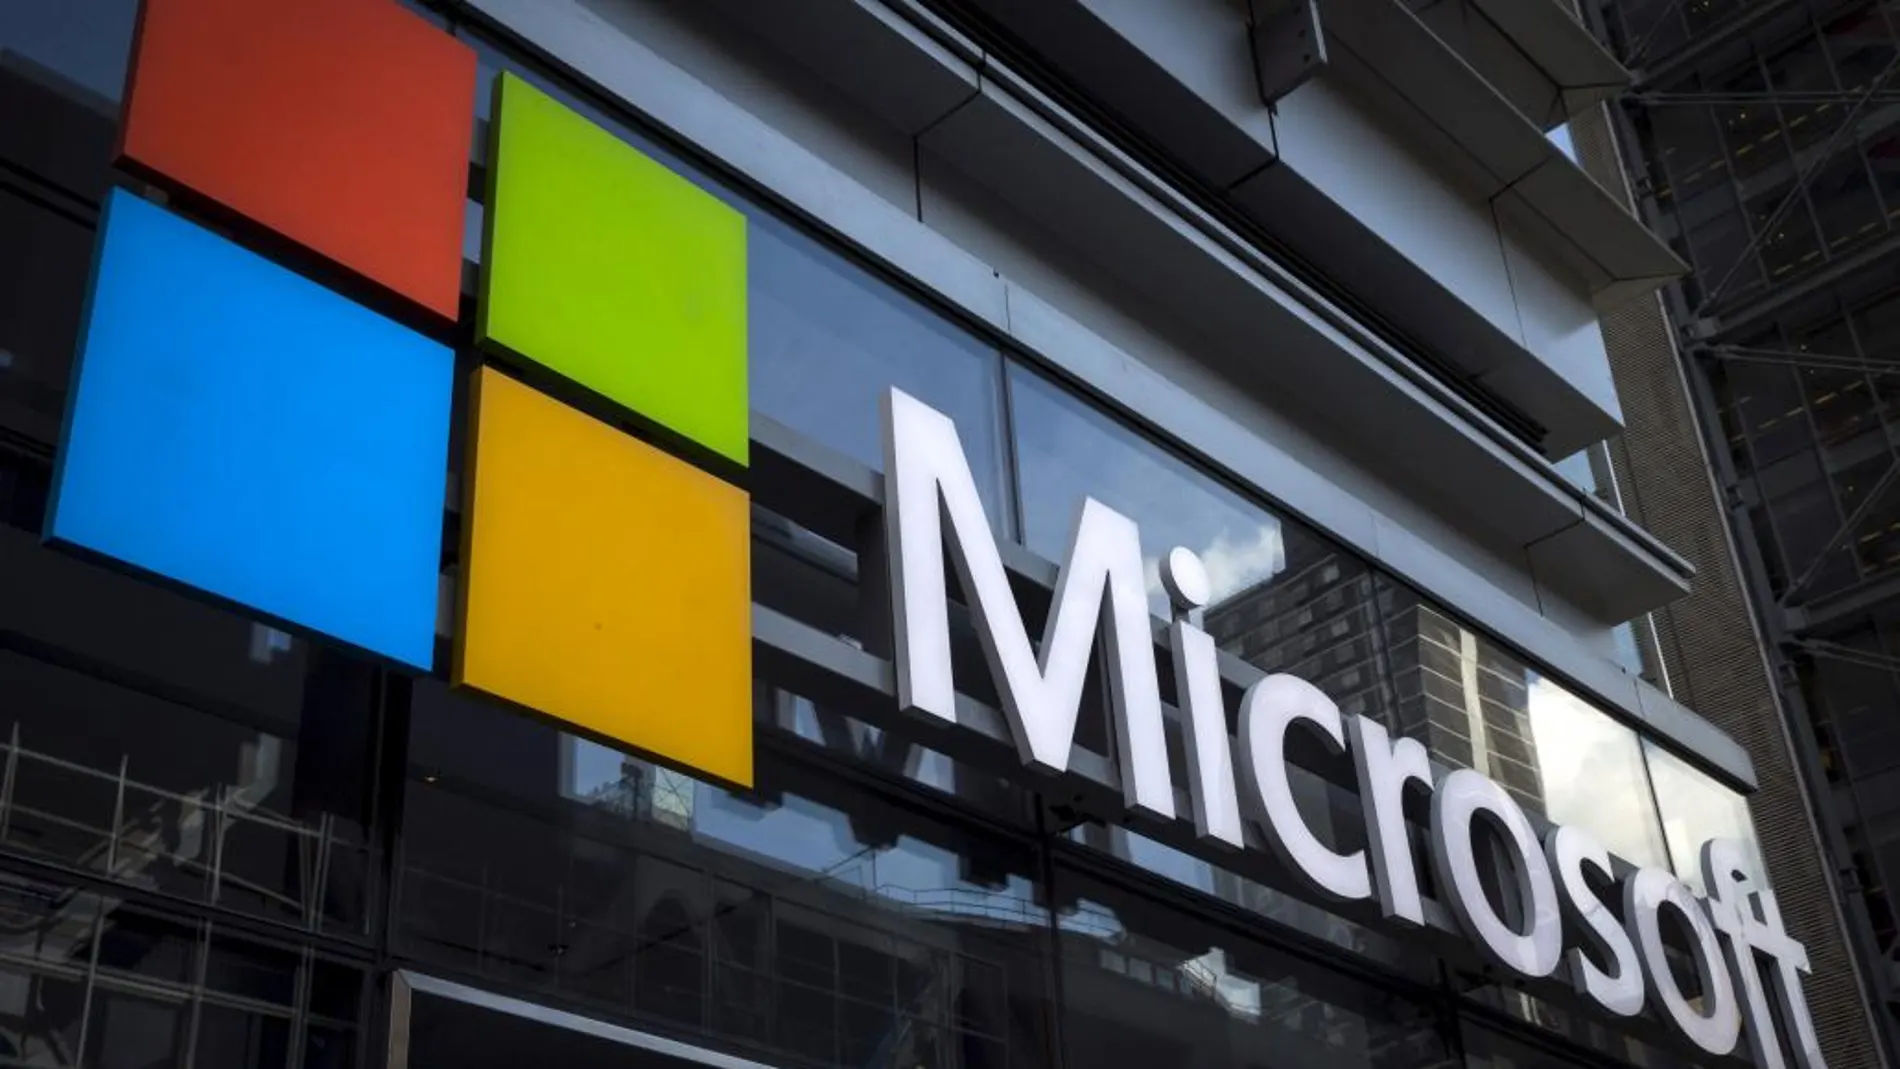 Logotipo de Microsoft en la facahada de un efifico de Nueva York